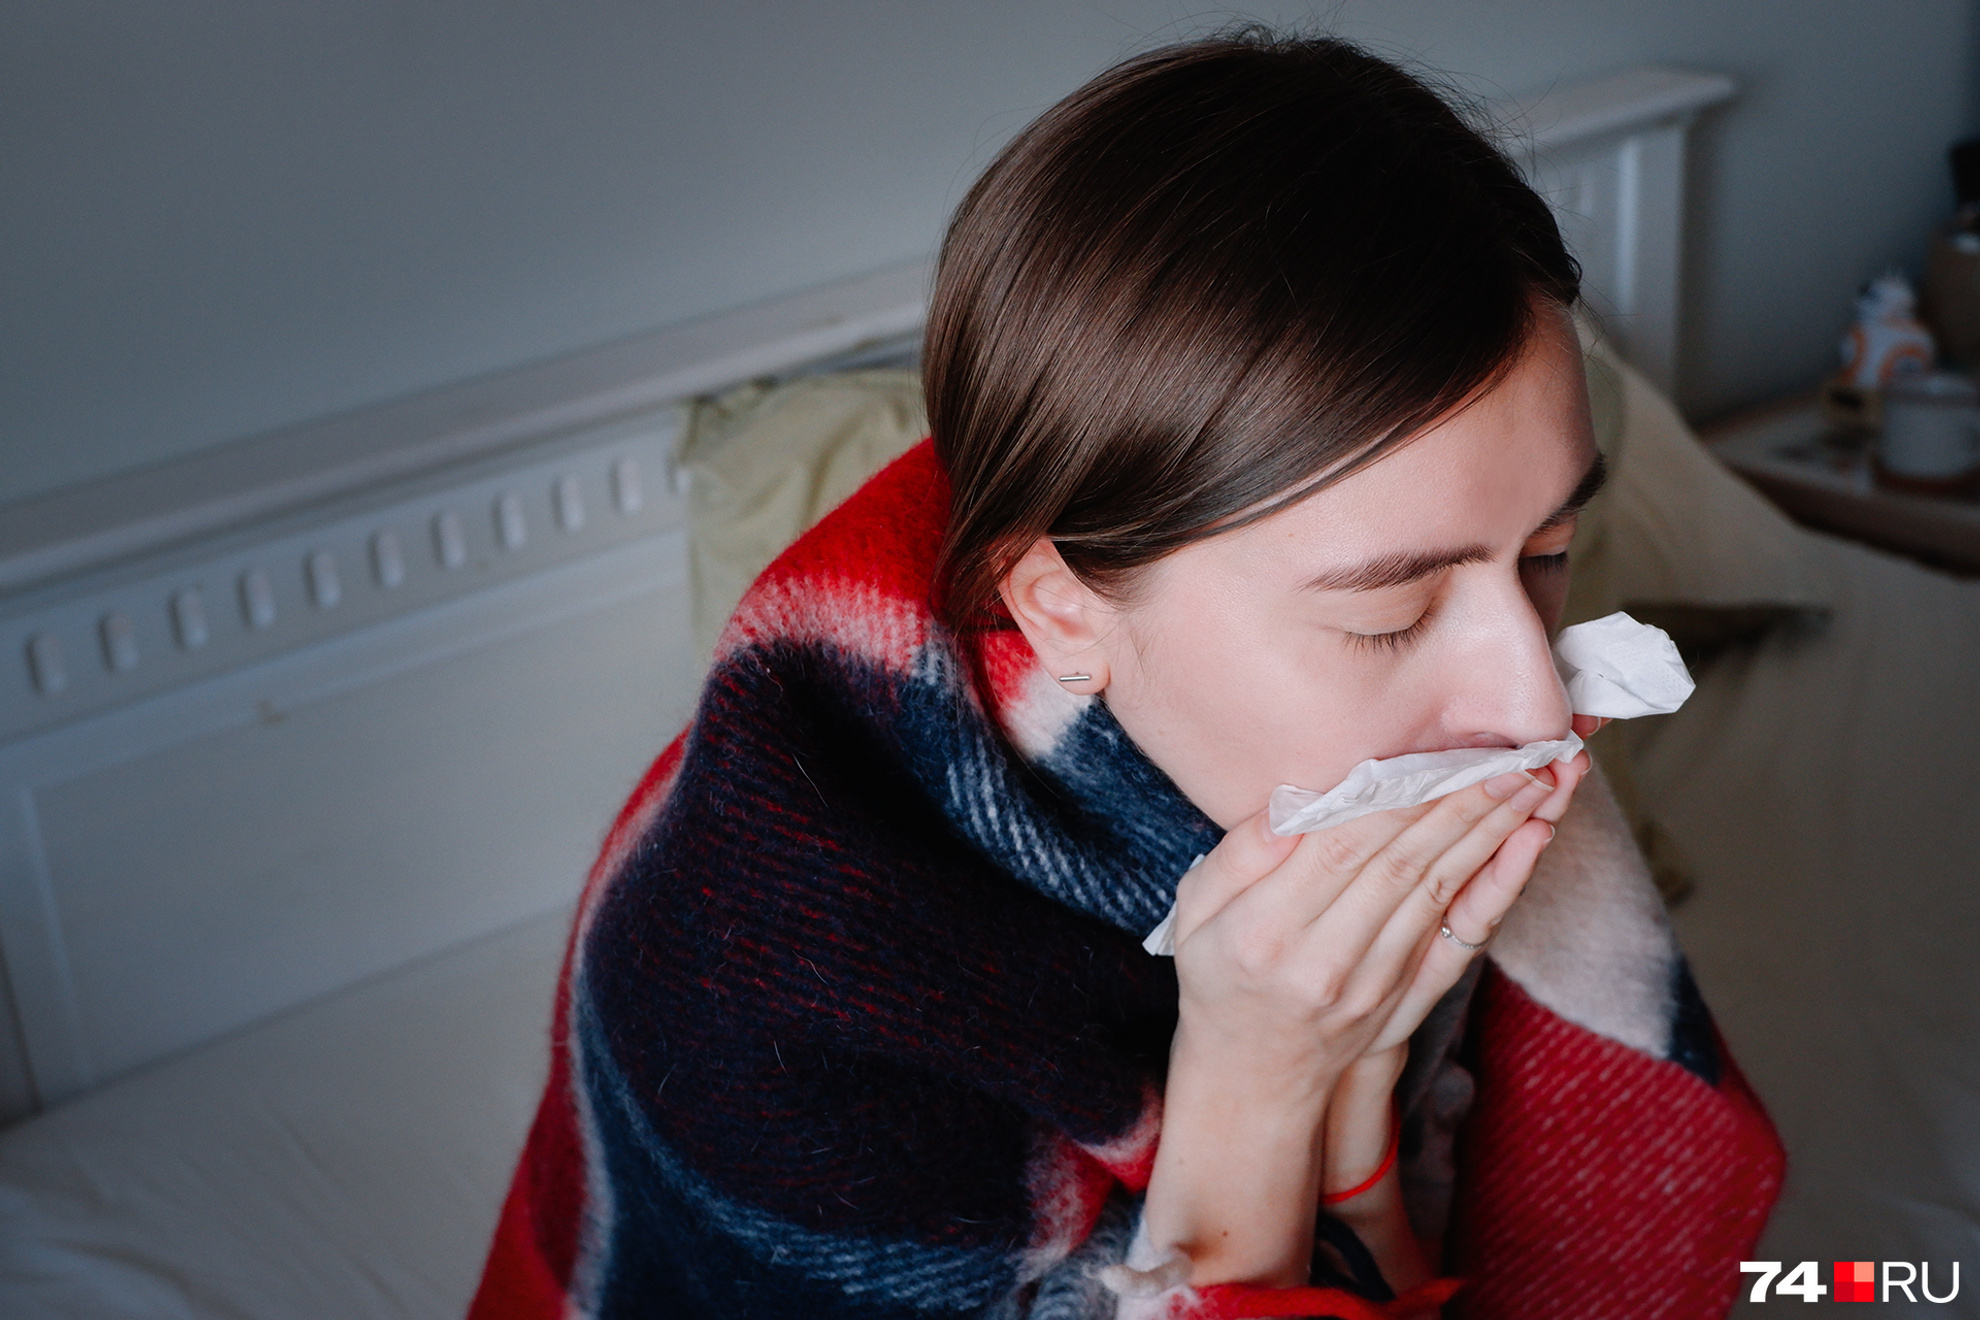 Как вылечить сухой кашель в домашних условиях за 1 день, лечение кашля народными средствами